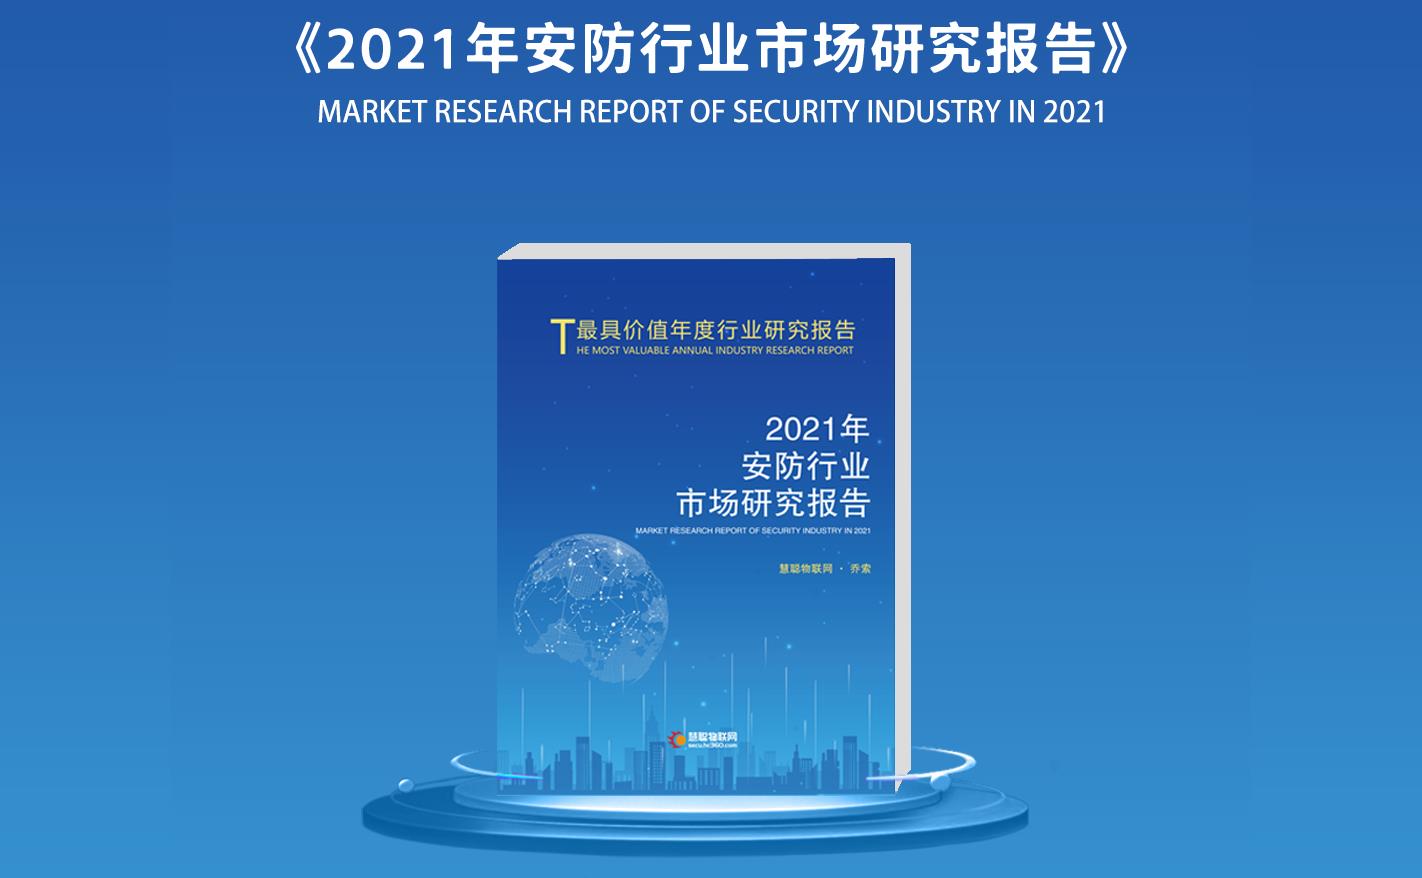 精彩预告 | 一文读懂2021中国物联网产业大会亮点